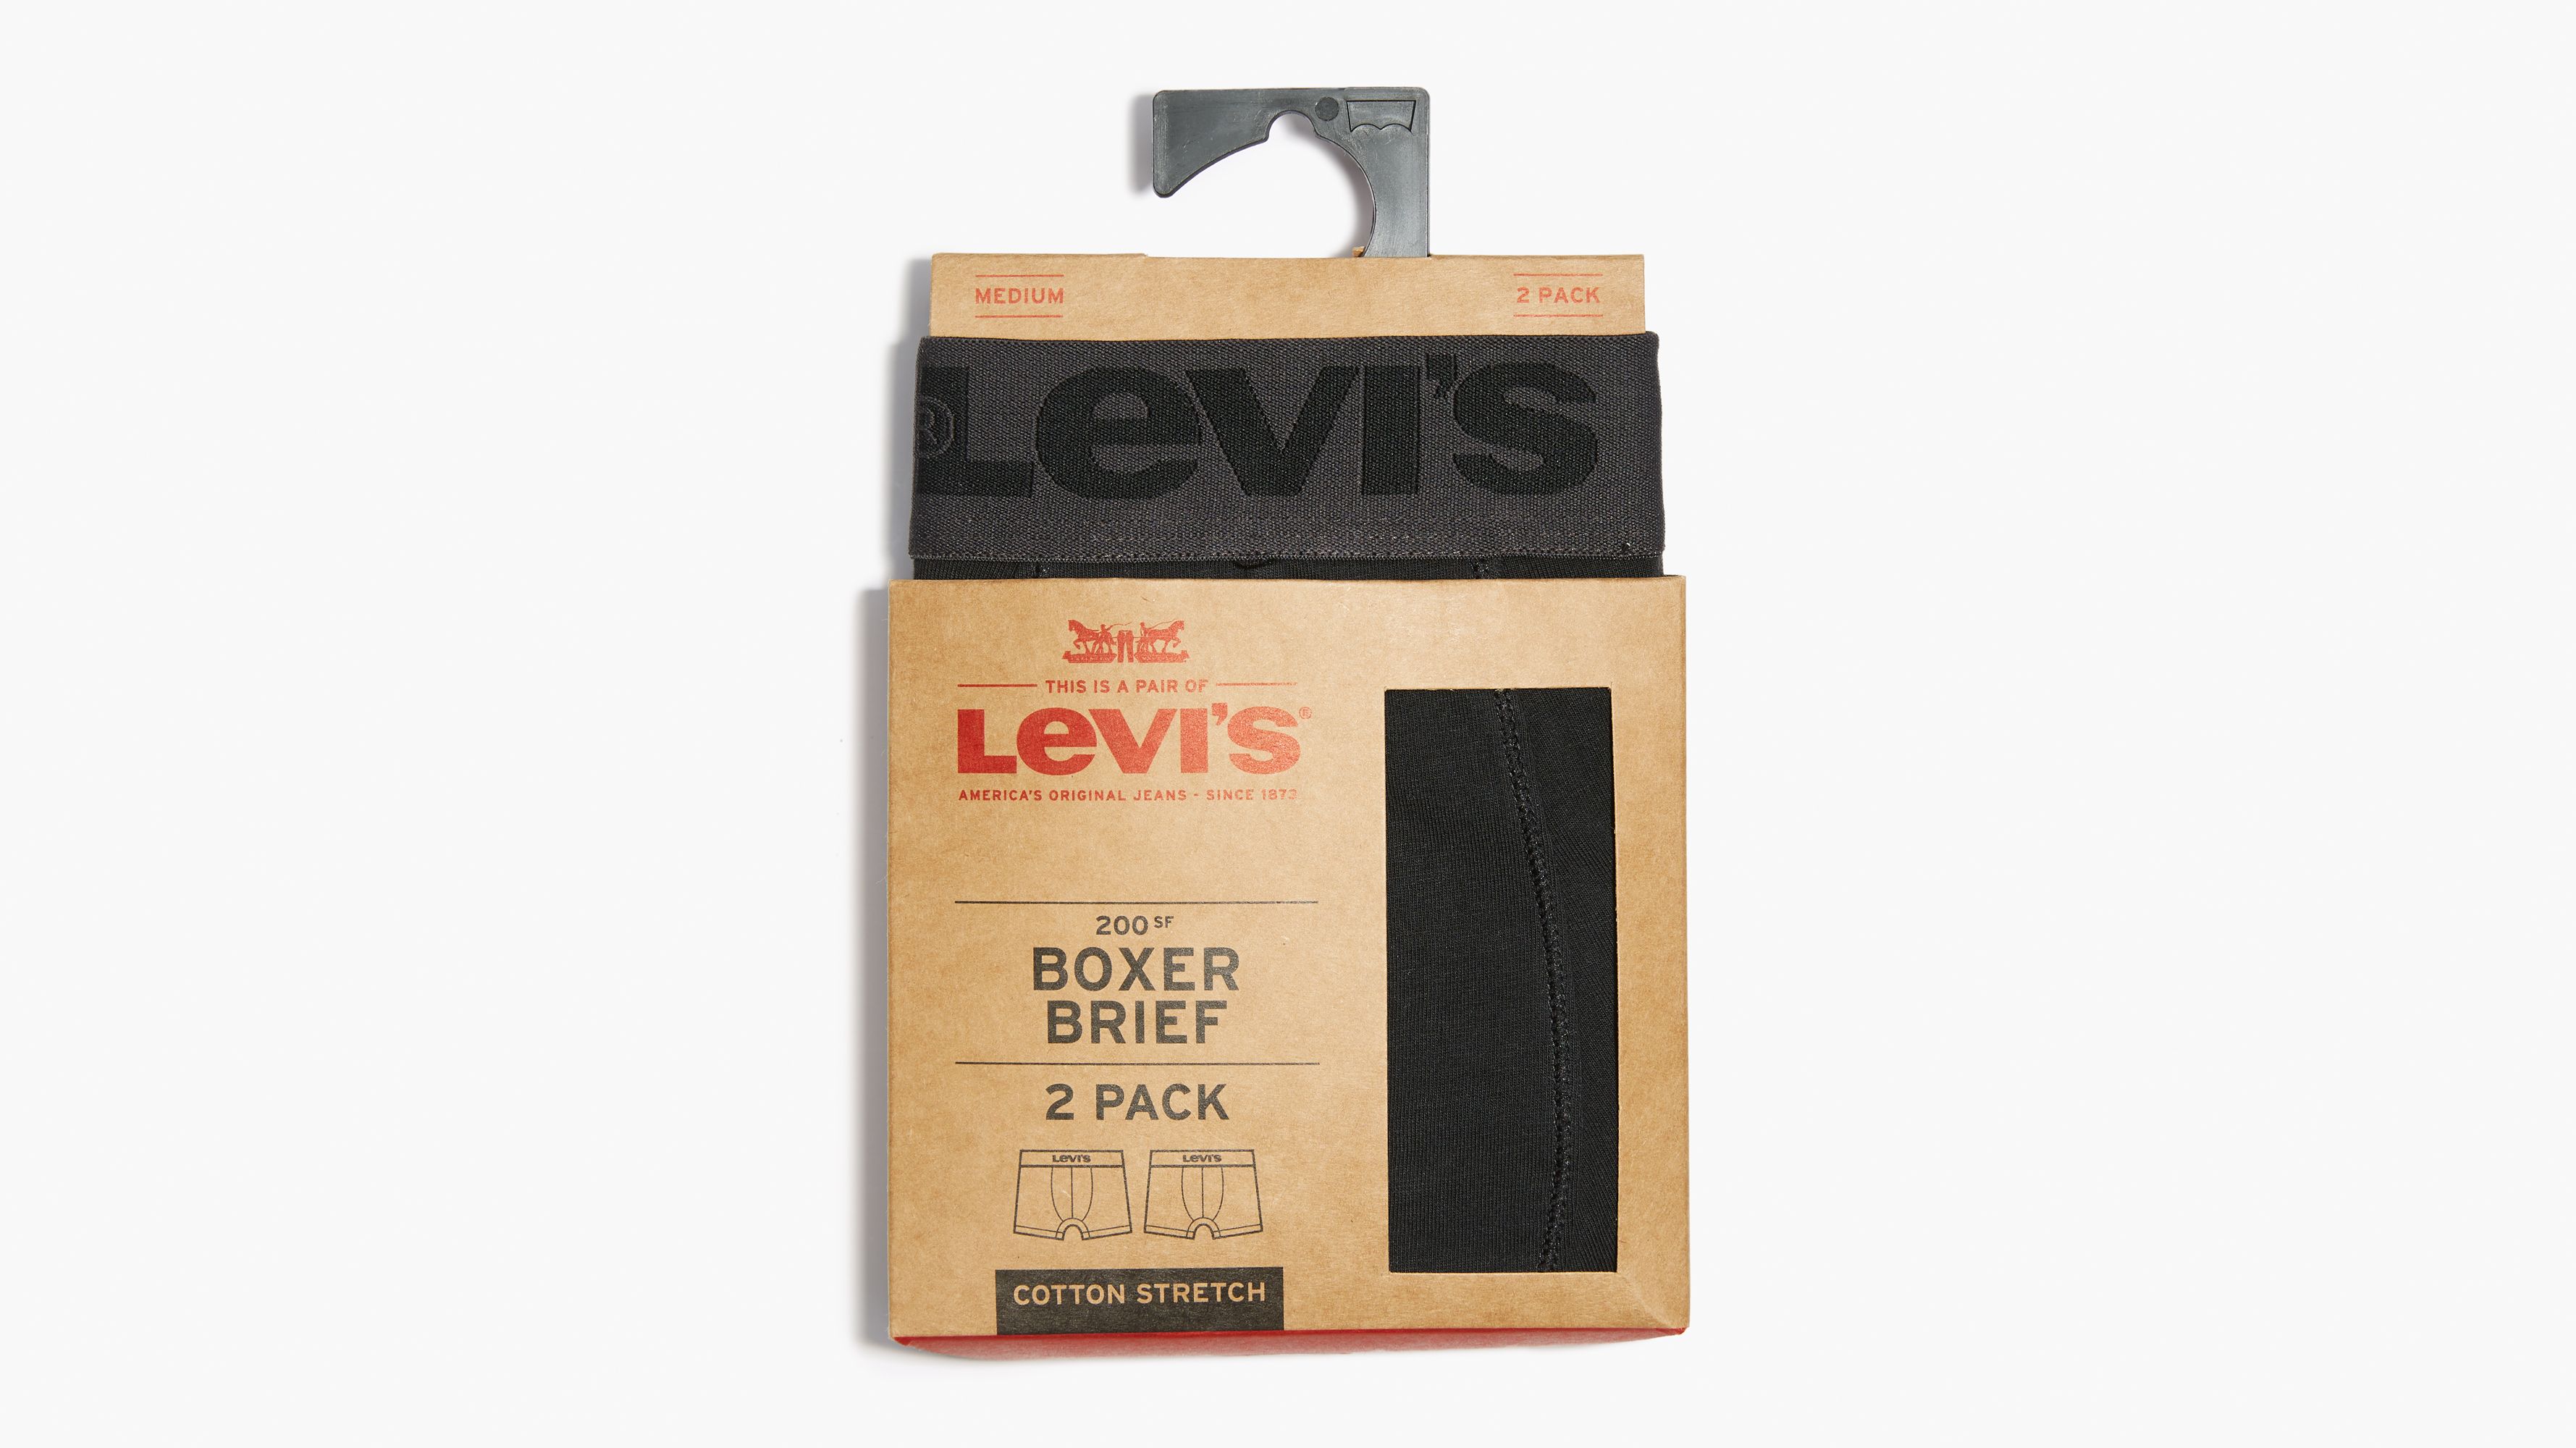 levi's boxer brief 3 pack